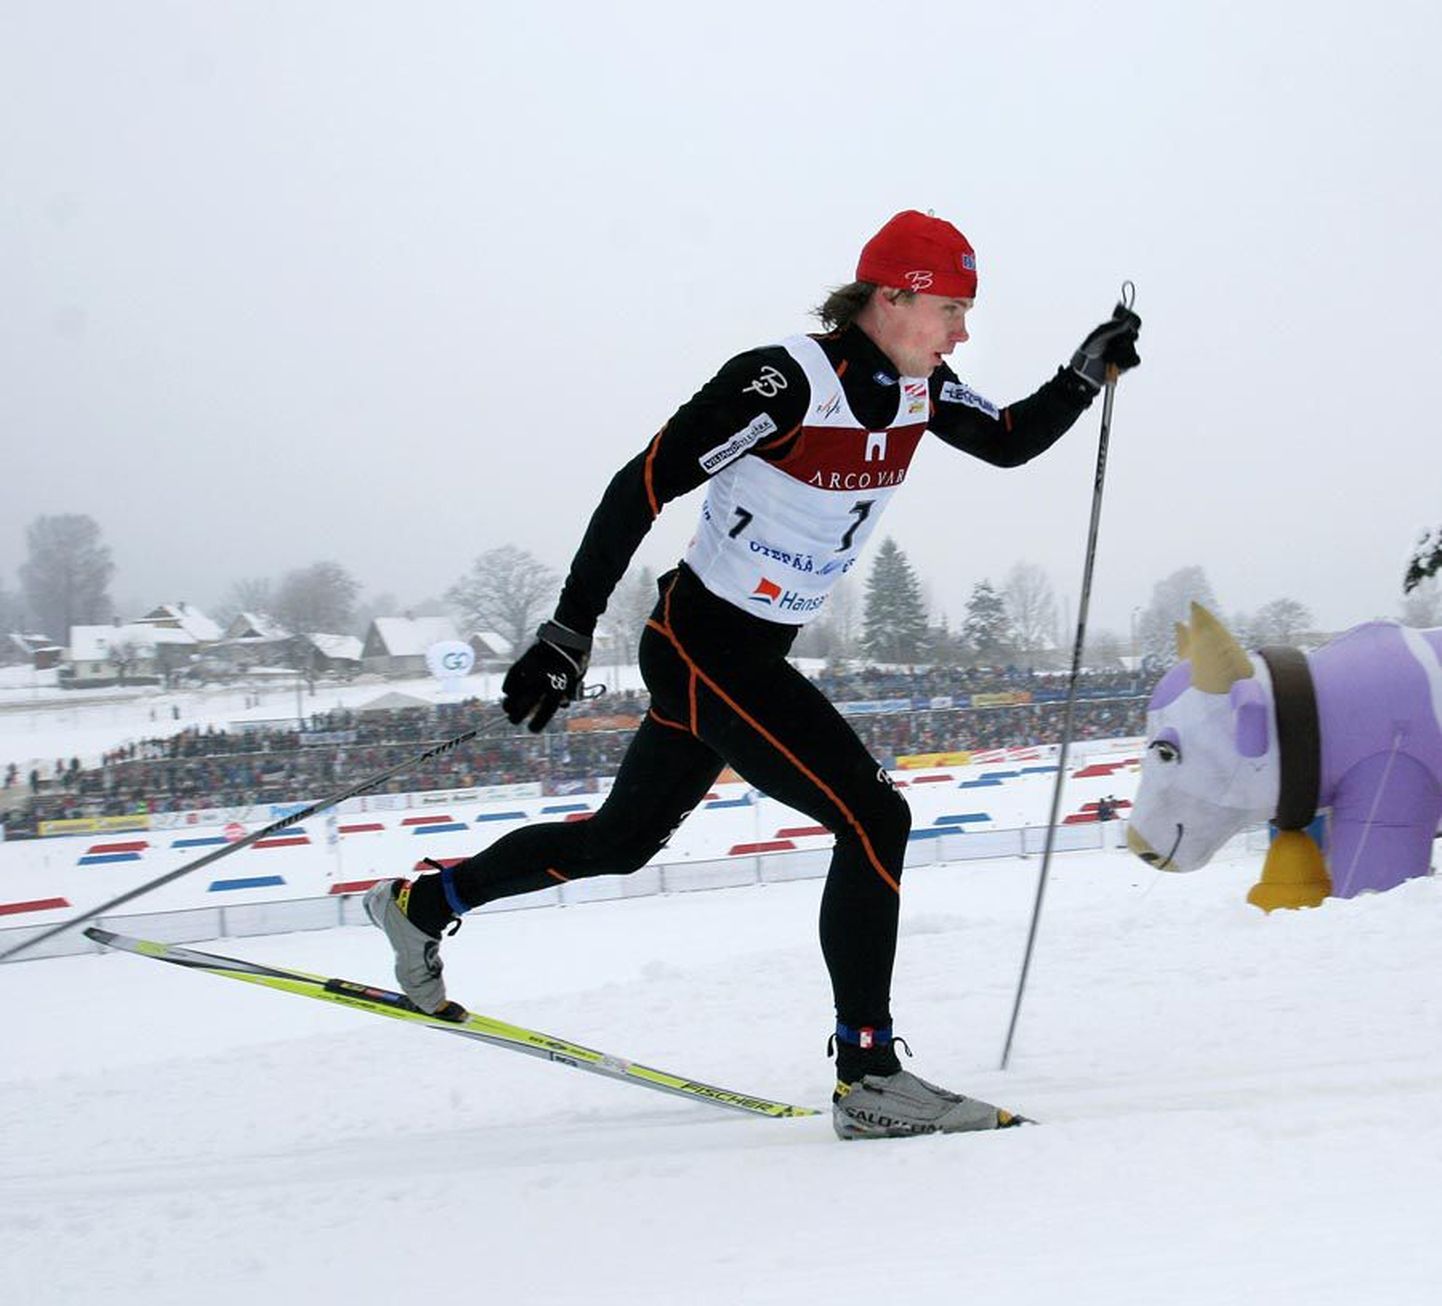 See pilt pärineb 2006. aastast, mil Meelis Aasmäe võistles Otepääl. Nüüd on ta olümpial kohal hooldemehena.